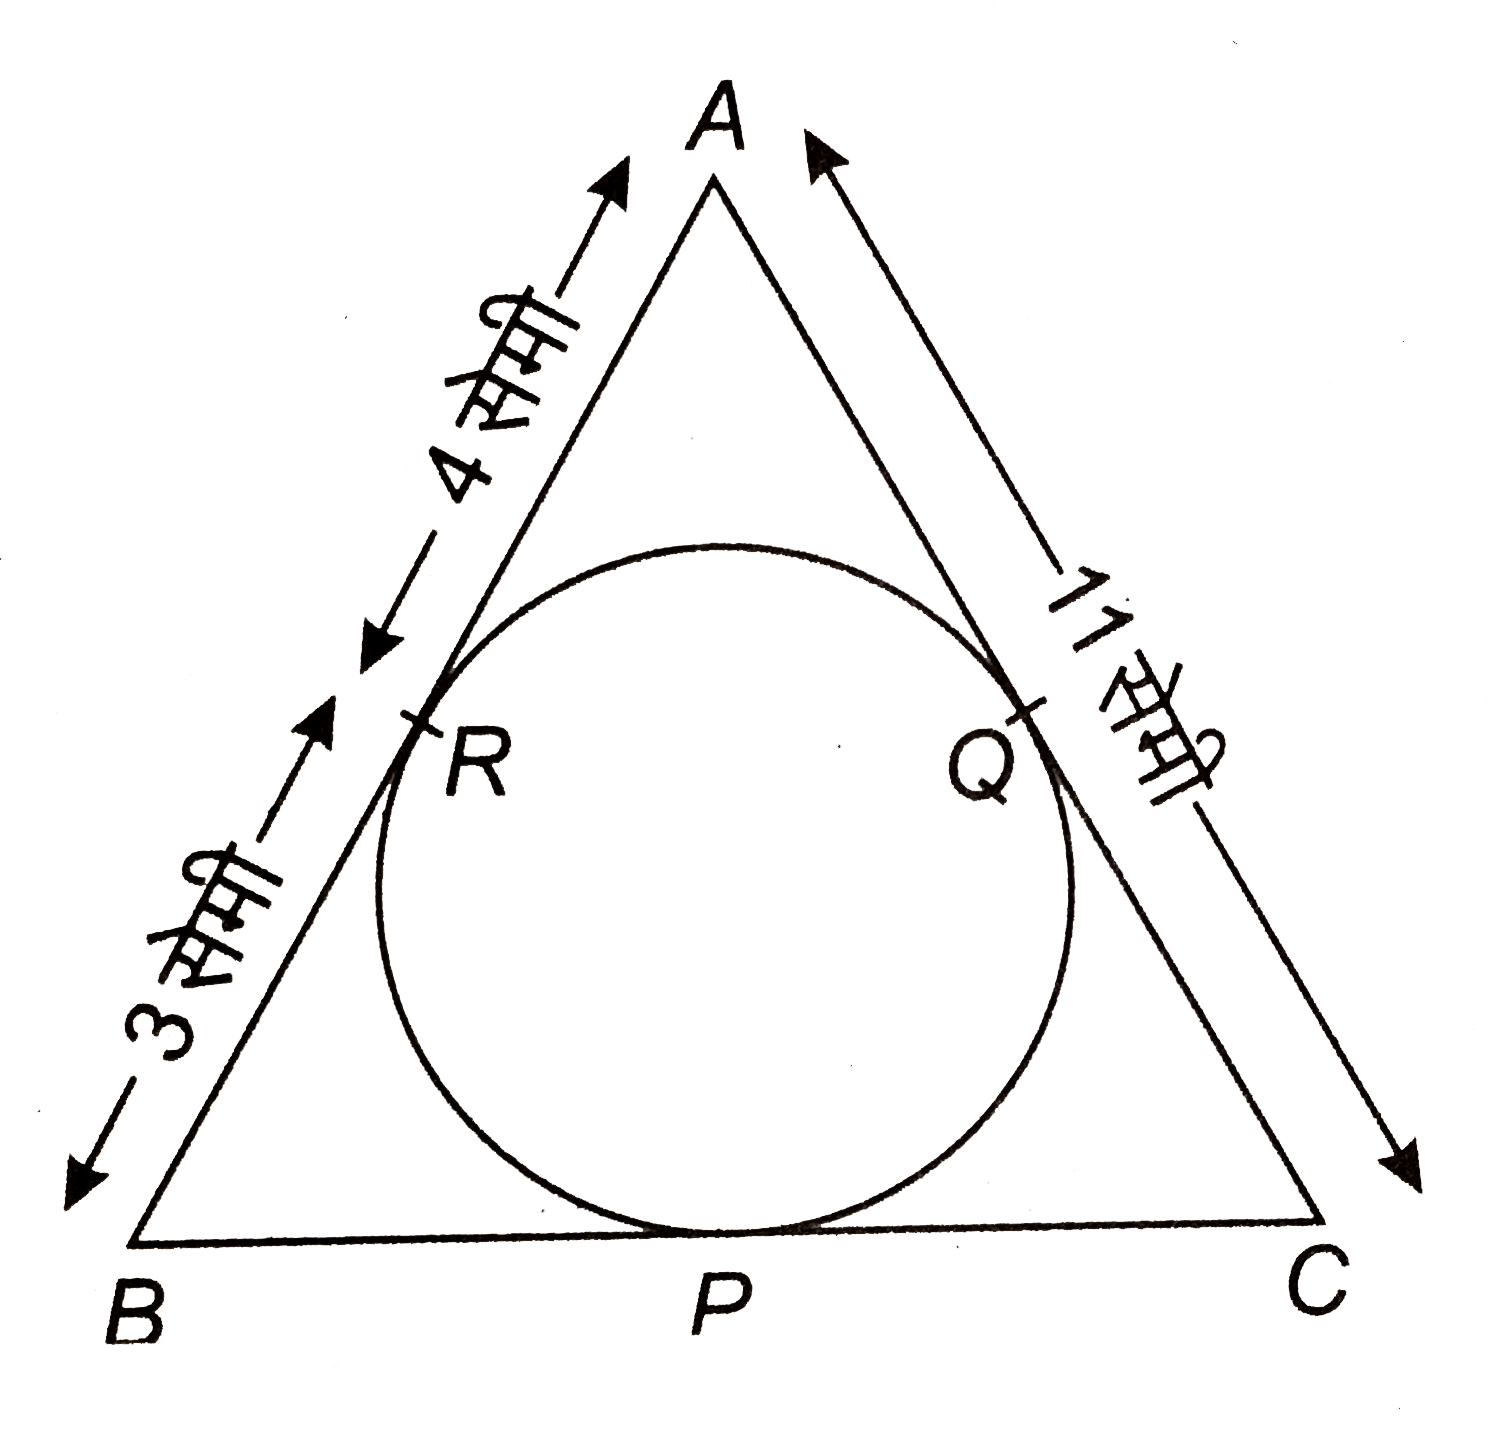 दी आकृति में, का वृत्त के परिगत DeltaABC बनाया गया है। BC की लम्बाई ज्ञात कीजिए, दिया है कि AR = 4 सेमी, RB = 3 सेमी और AC = 11 सेमी।